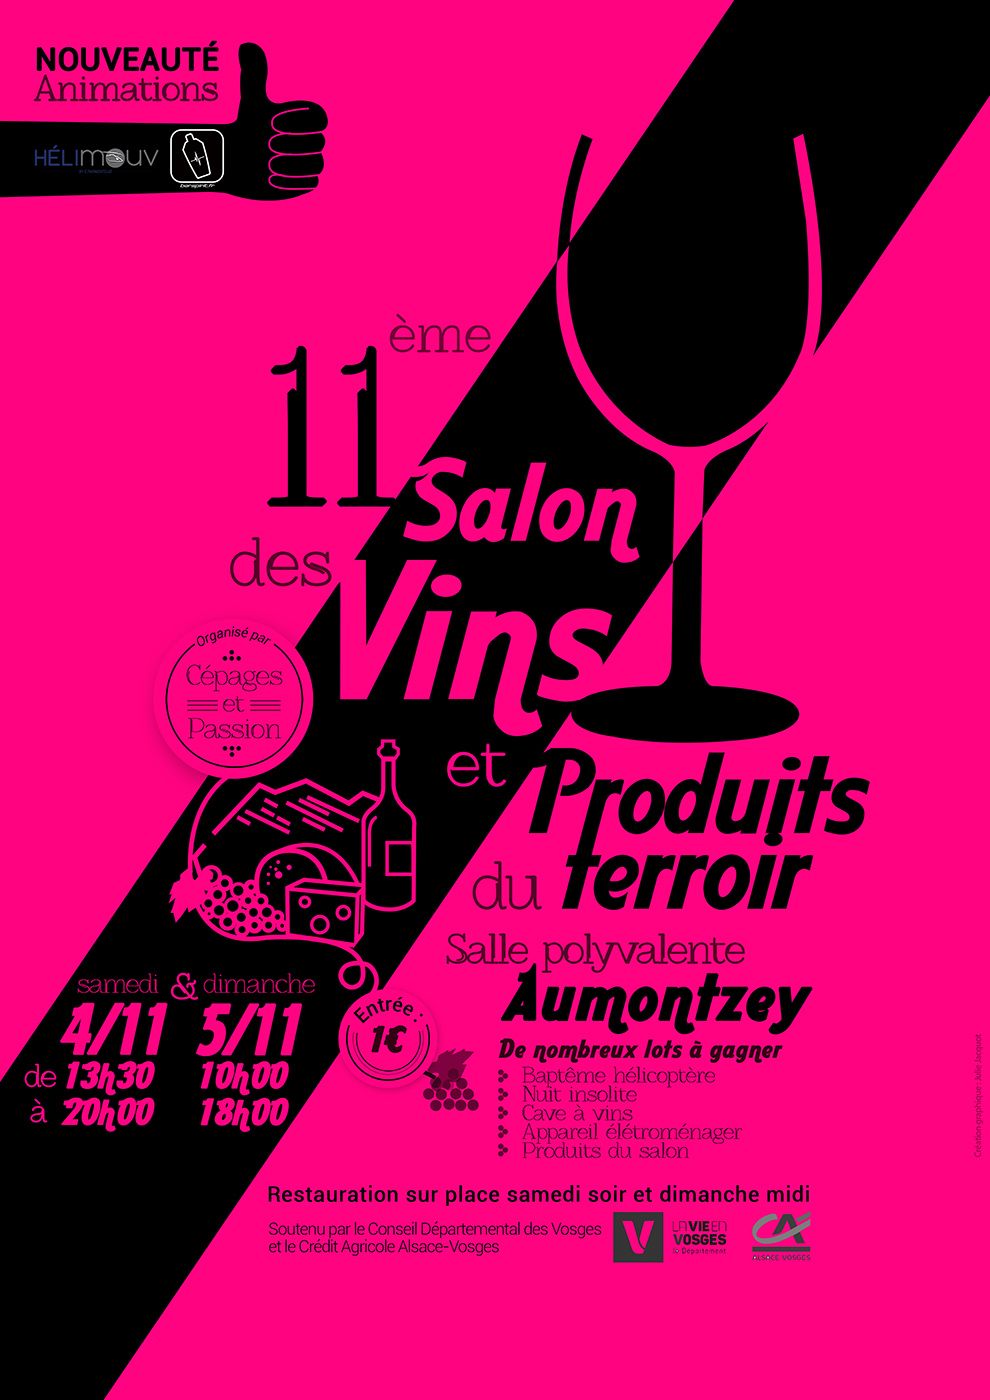 Granges-Autmonzey : 11ème Salon Vins et Terroirs ce weekend